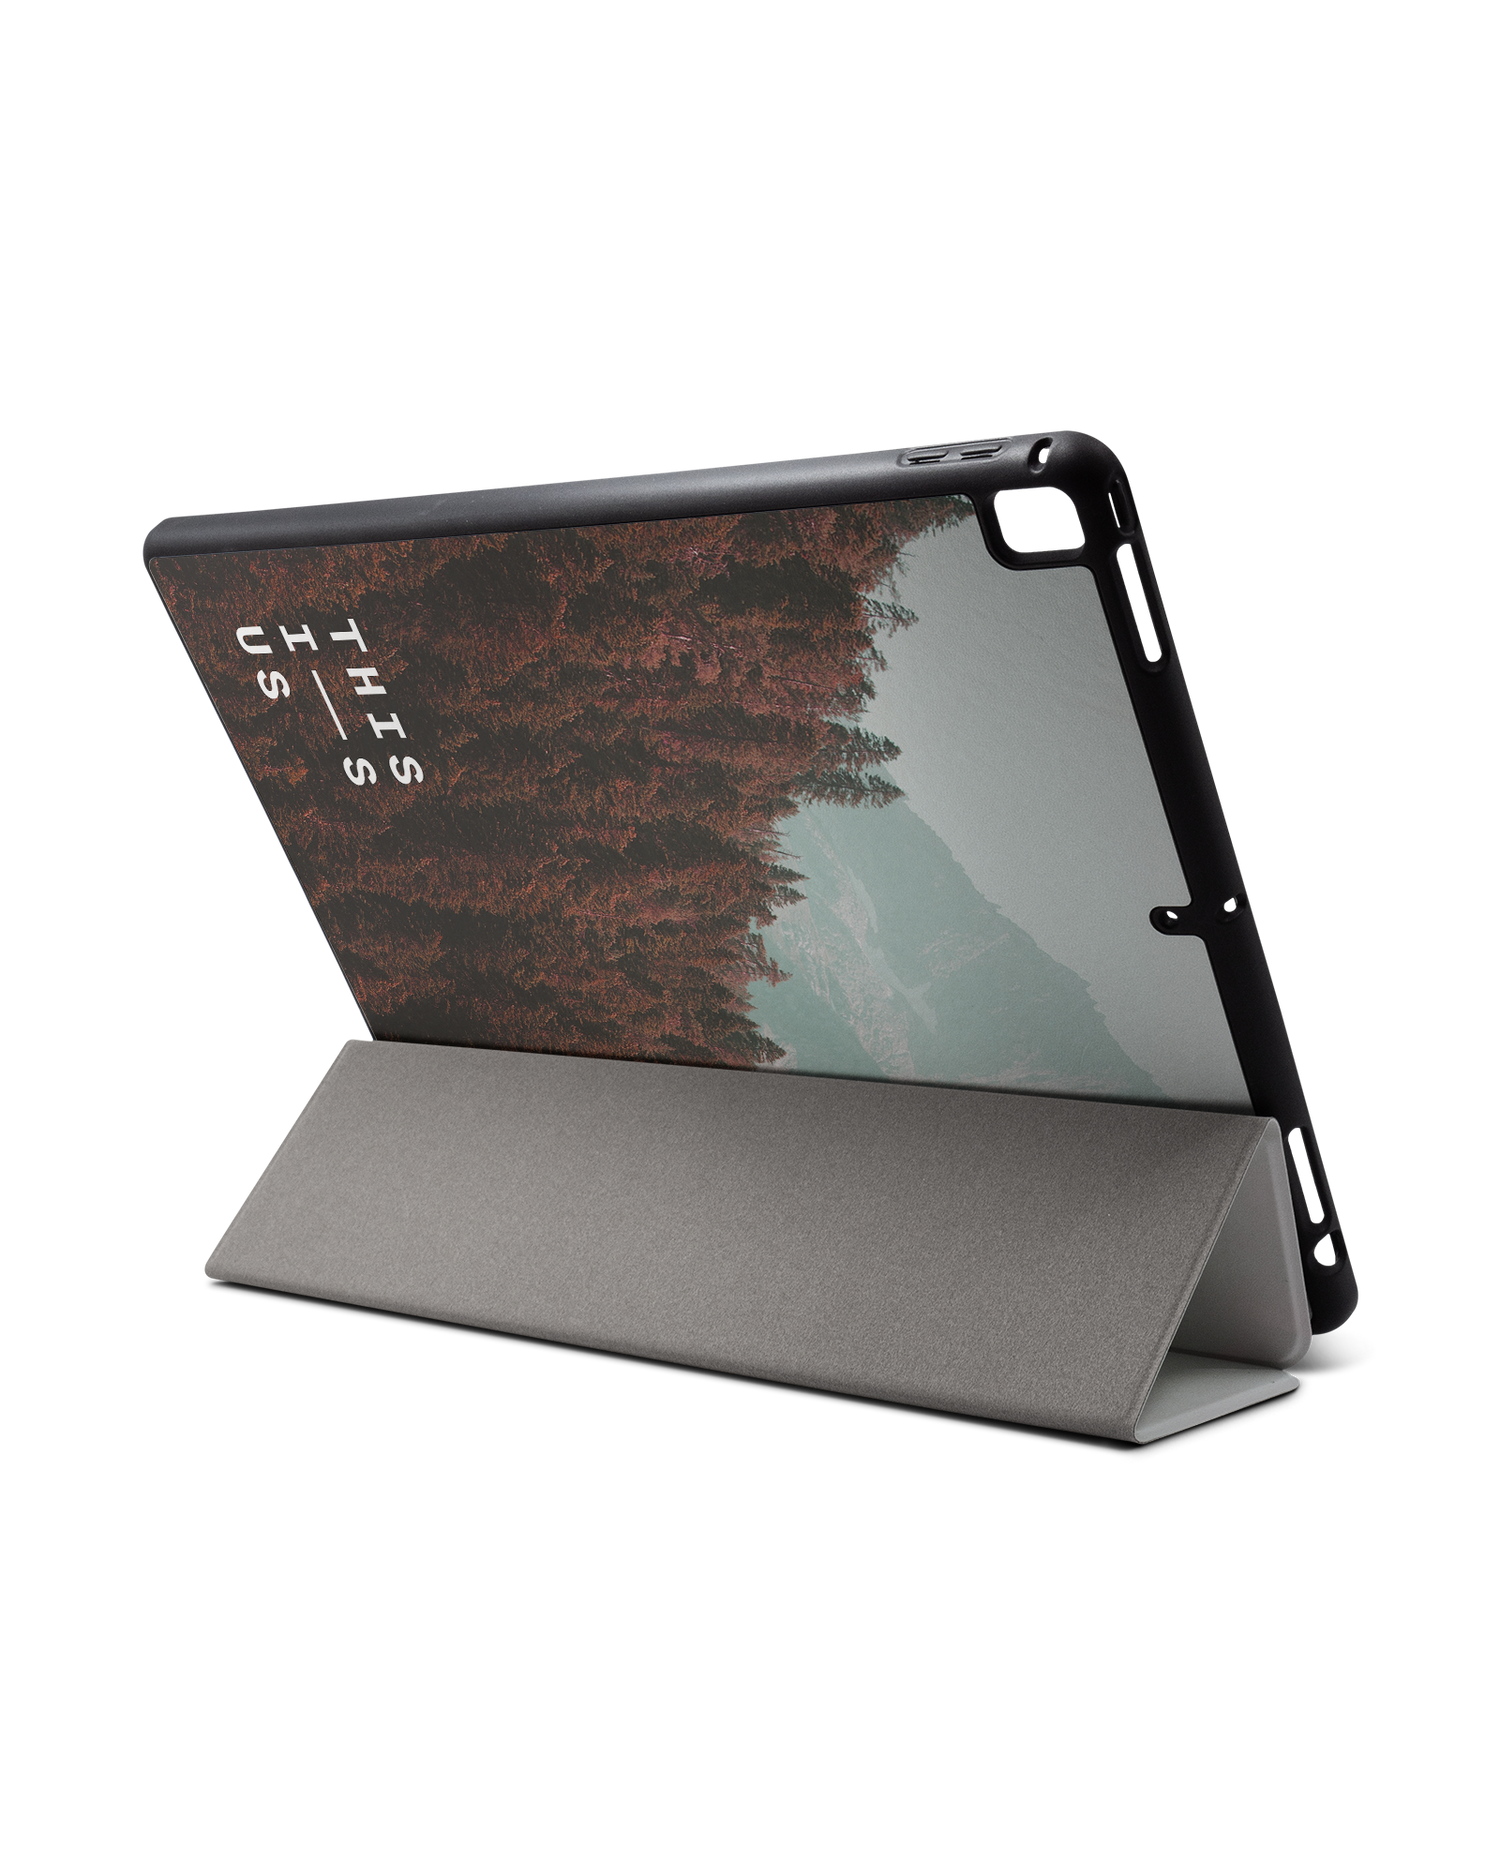 Into the Woods iPad Hülle mit Stifthalter für Apple iPad Pro 2 12.9'' (2017): Aufgestellt im Querformat von hinten